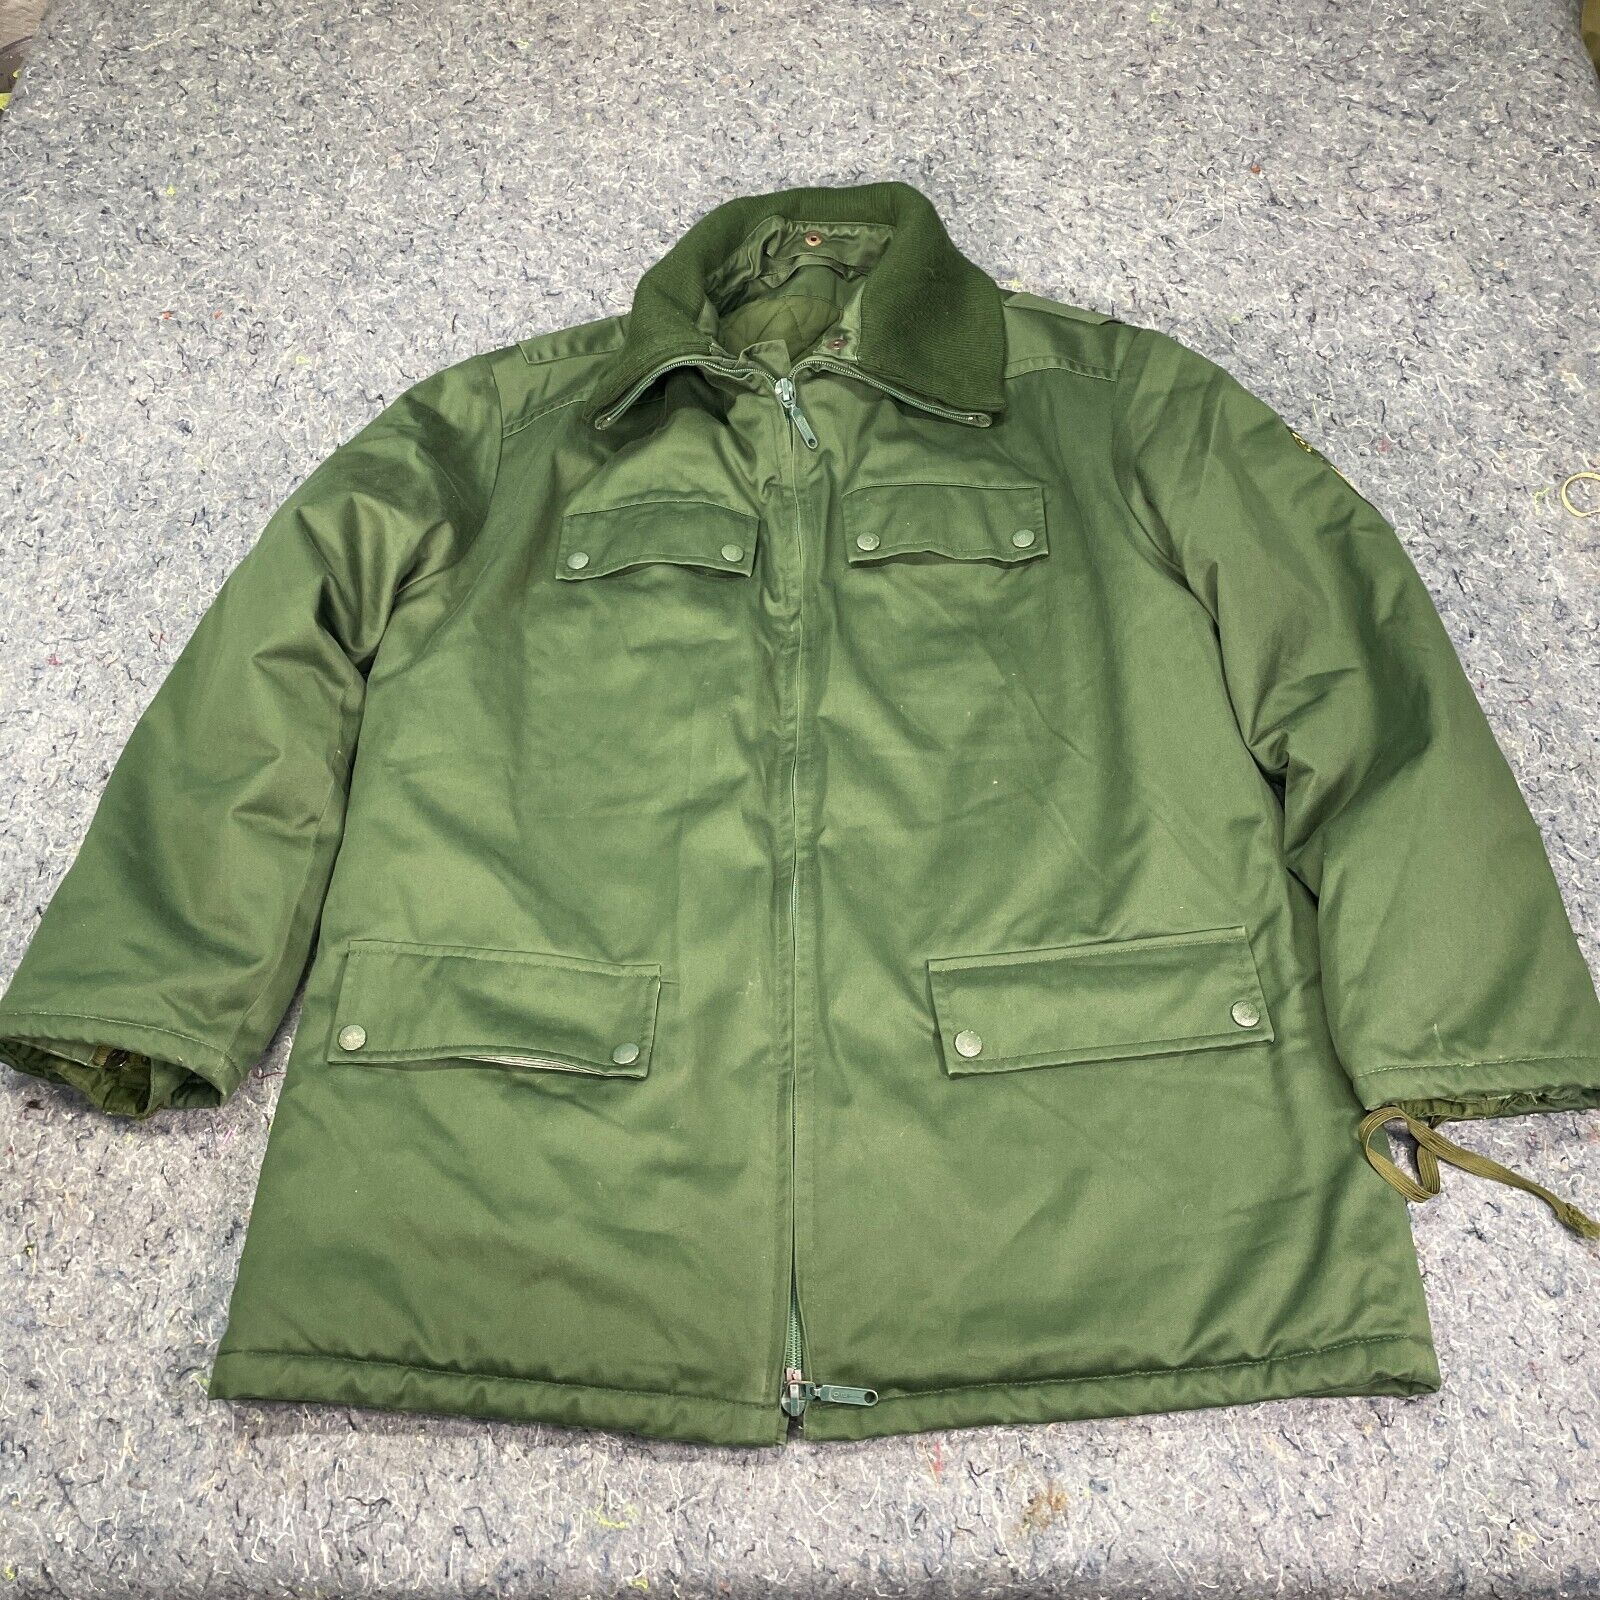 Vintage WISPO 1995 Polzei Military Jacket L-XL Airsoft Cosplay Gore Tex